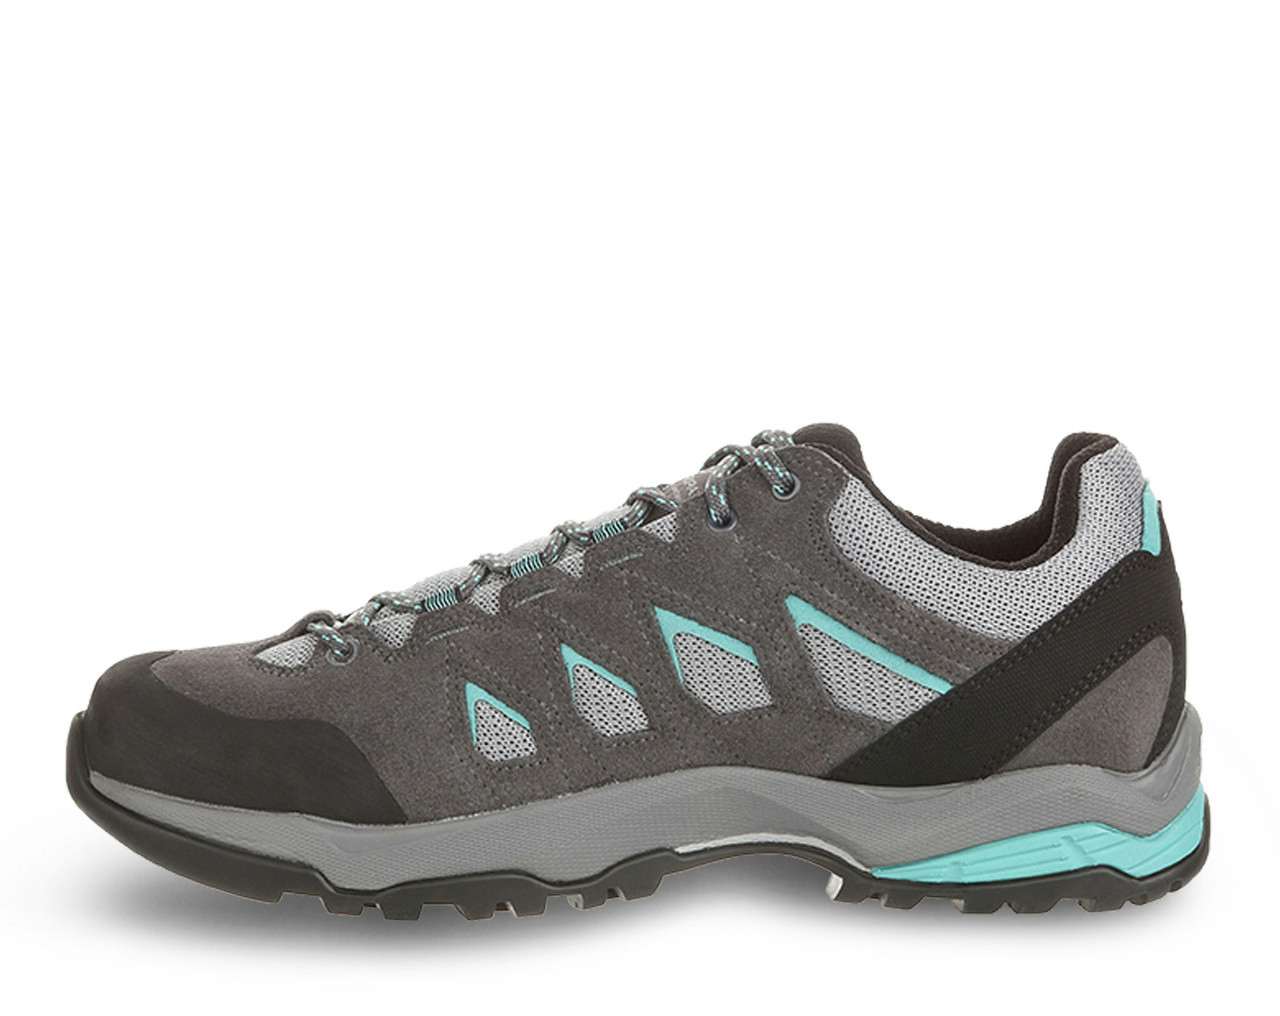 Chaussures de courte randonnée Moraine GORE-TEX Gris moyen/Lagon